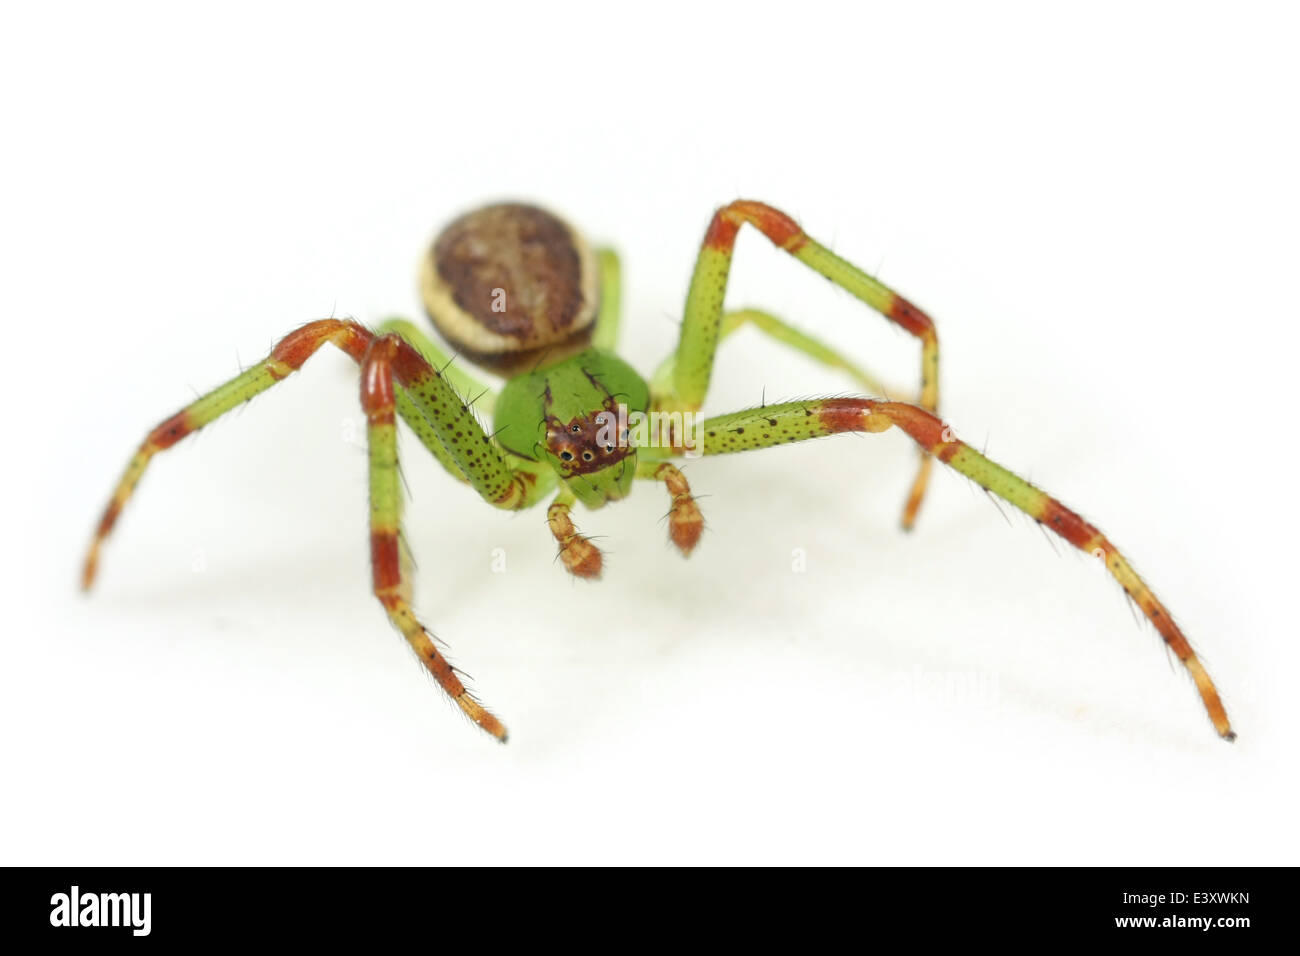 Männliche Diaea Dorsata Spinne, Teil der Familie Thomisidae (Krabben Spinnen). Isoliert auf weißem Hintergrund. Stockfoto